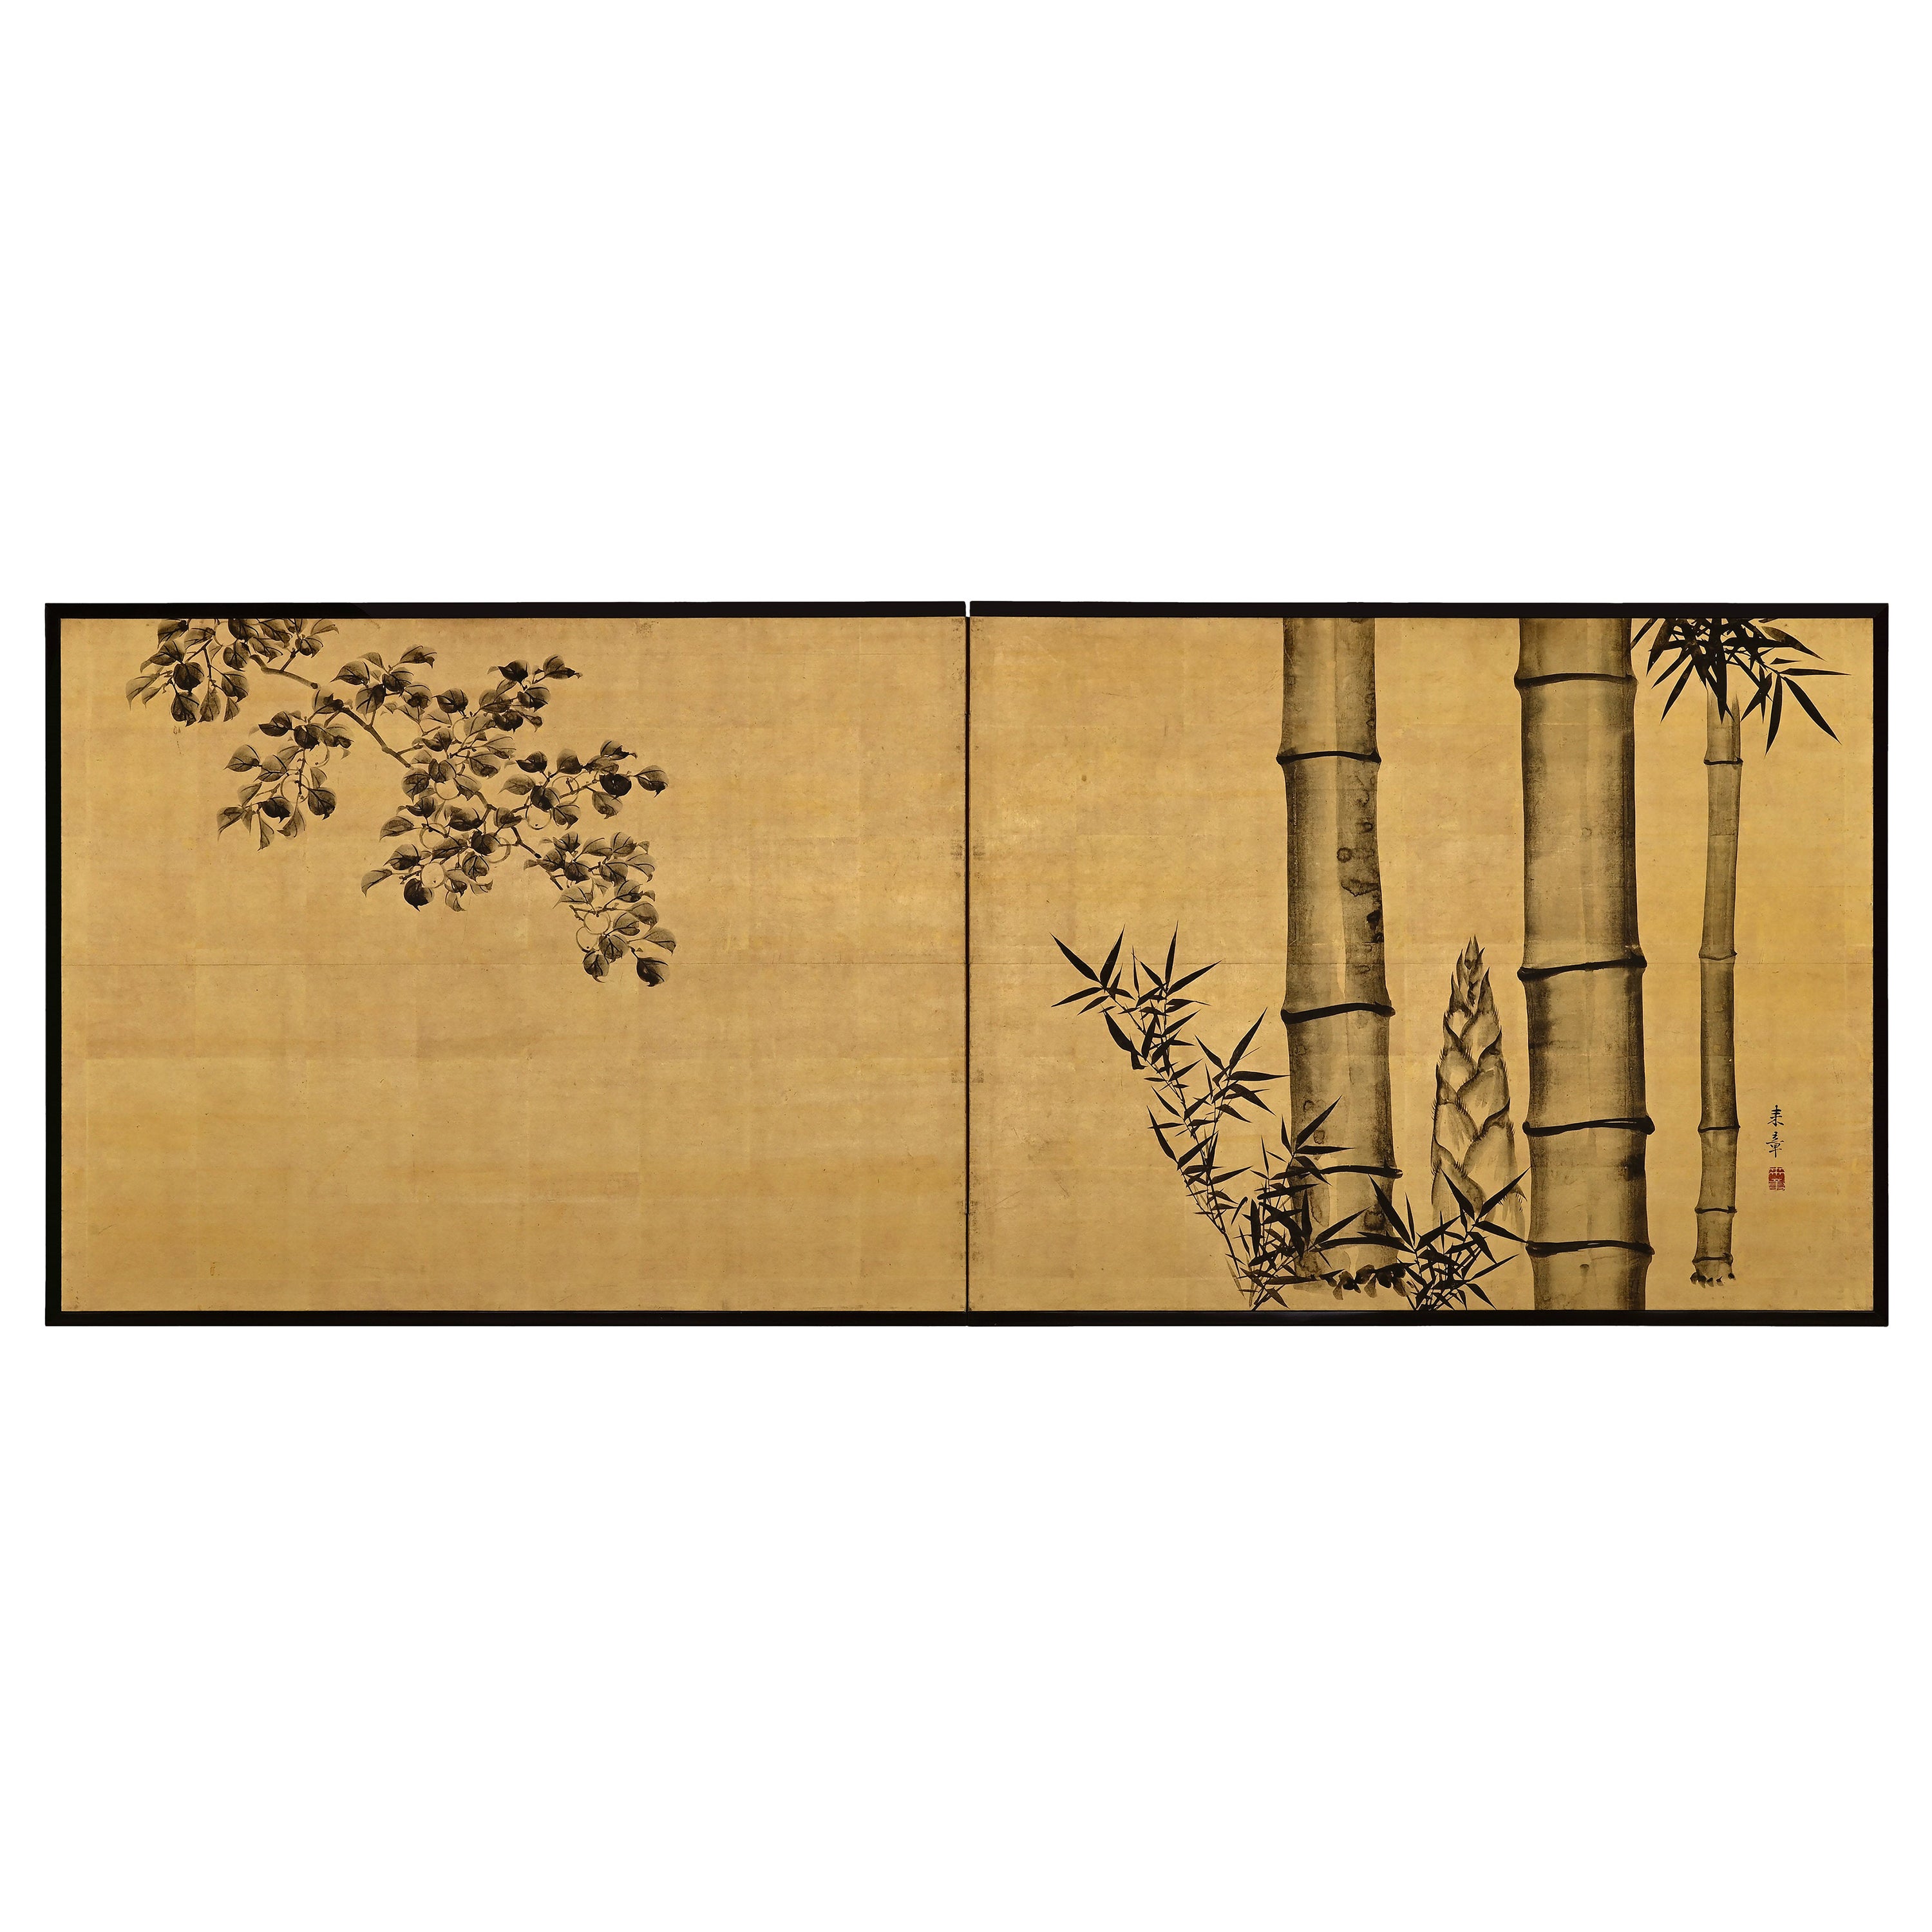 Paravent japonais du 19me sicle pour le crmonie du th, encre de bambou et prune sur feuille d'or